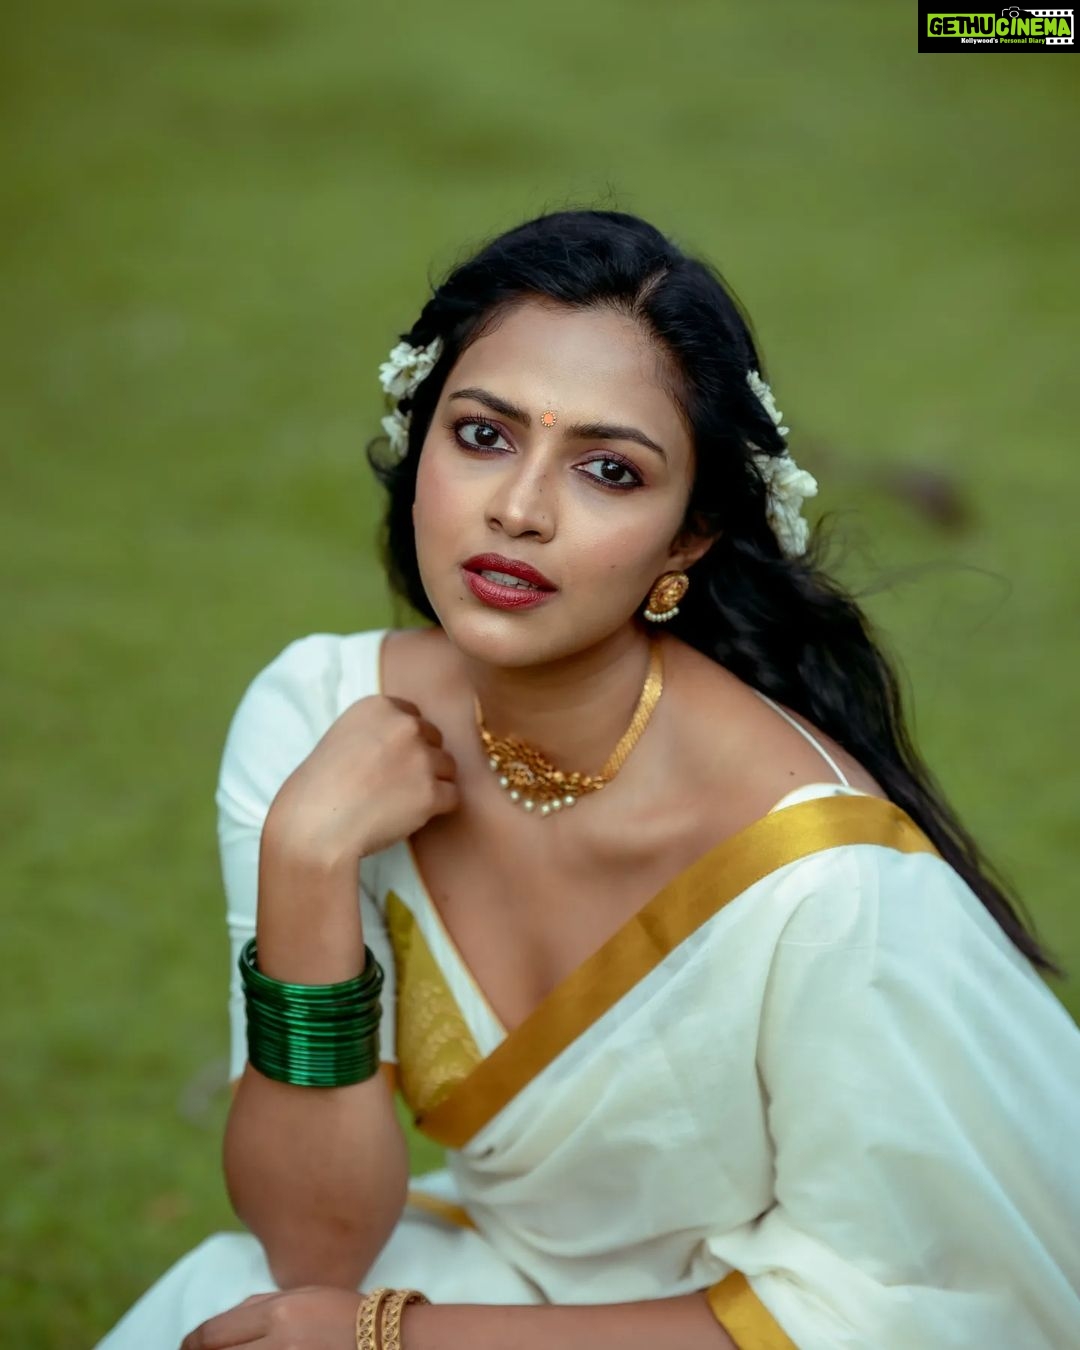 Tamil Actress Amala Paul Xxx Sex Fucking Free - Actress Amala Paul Top 100 Instagram Photos and Posts - Gethu Cinema